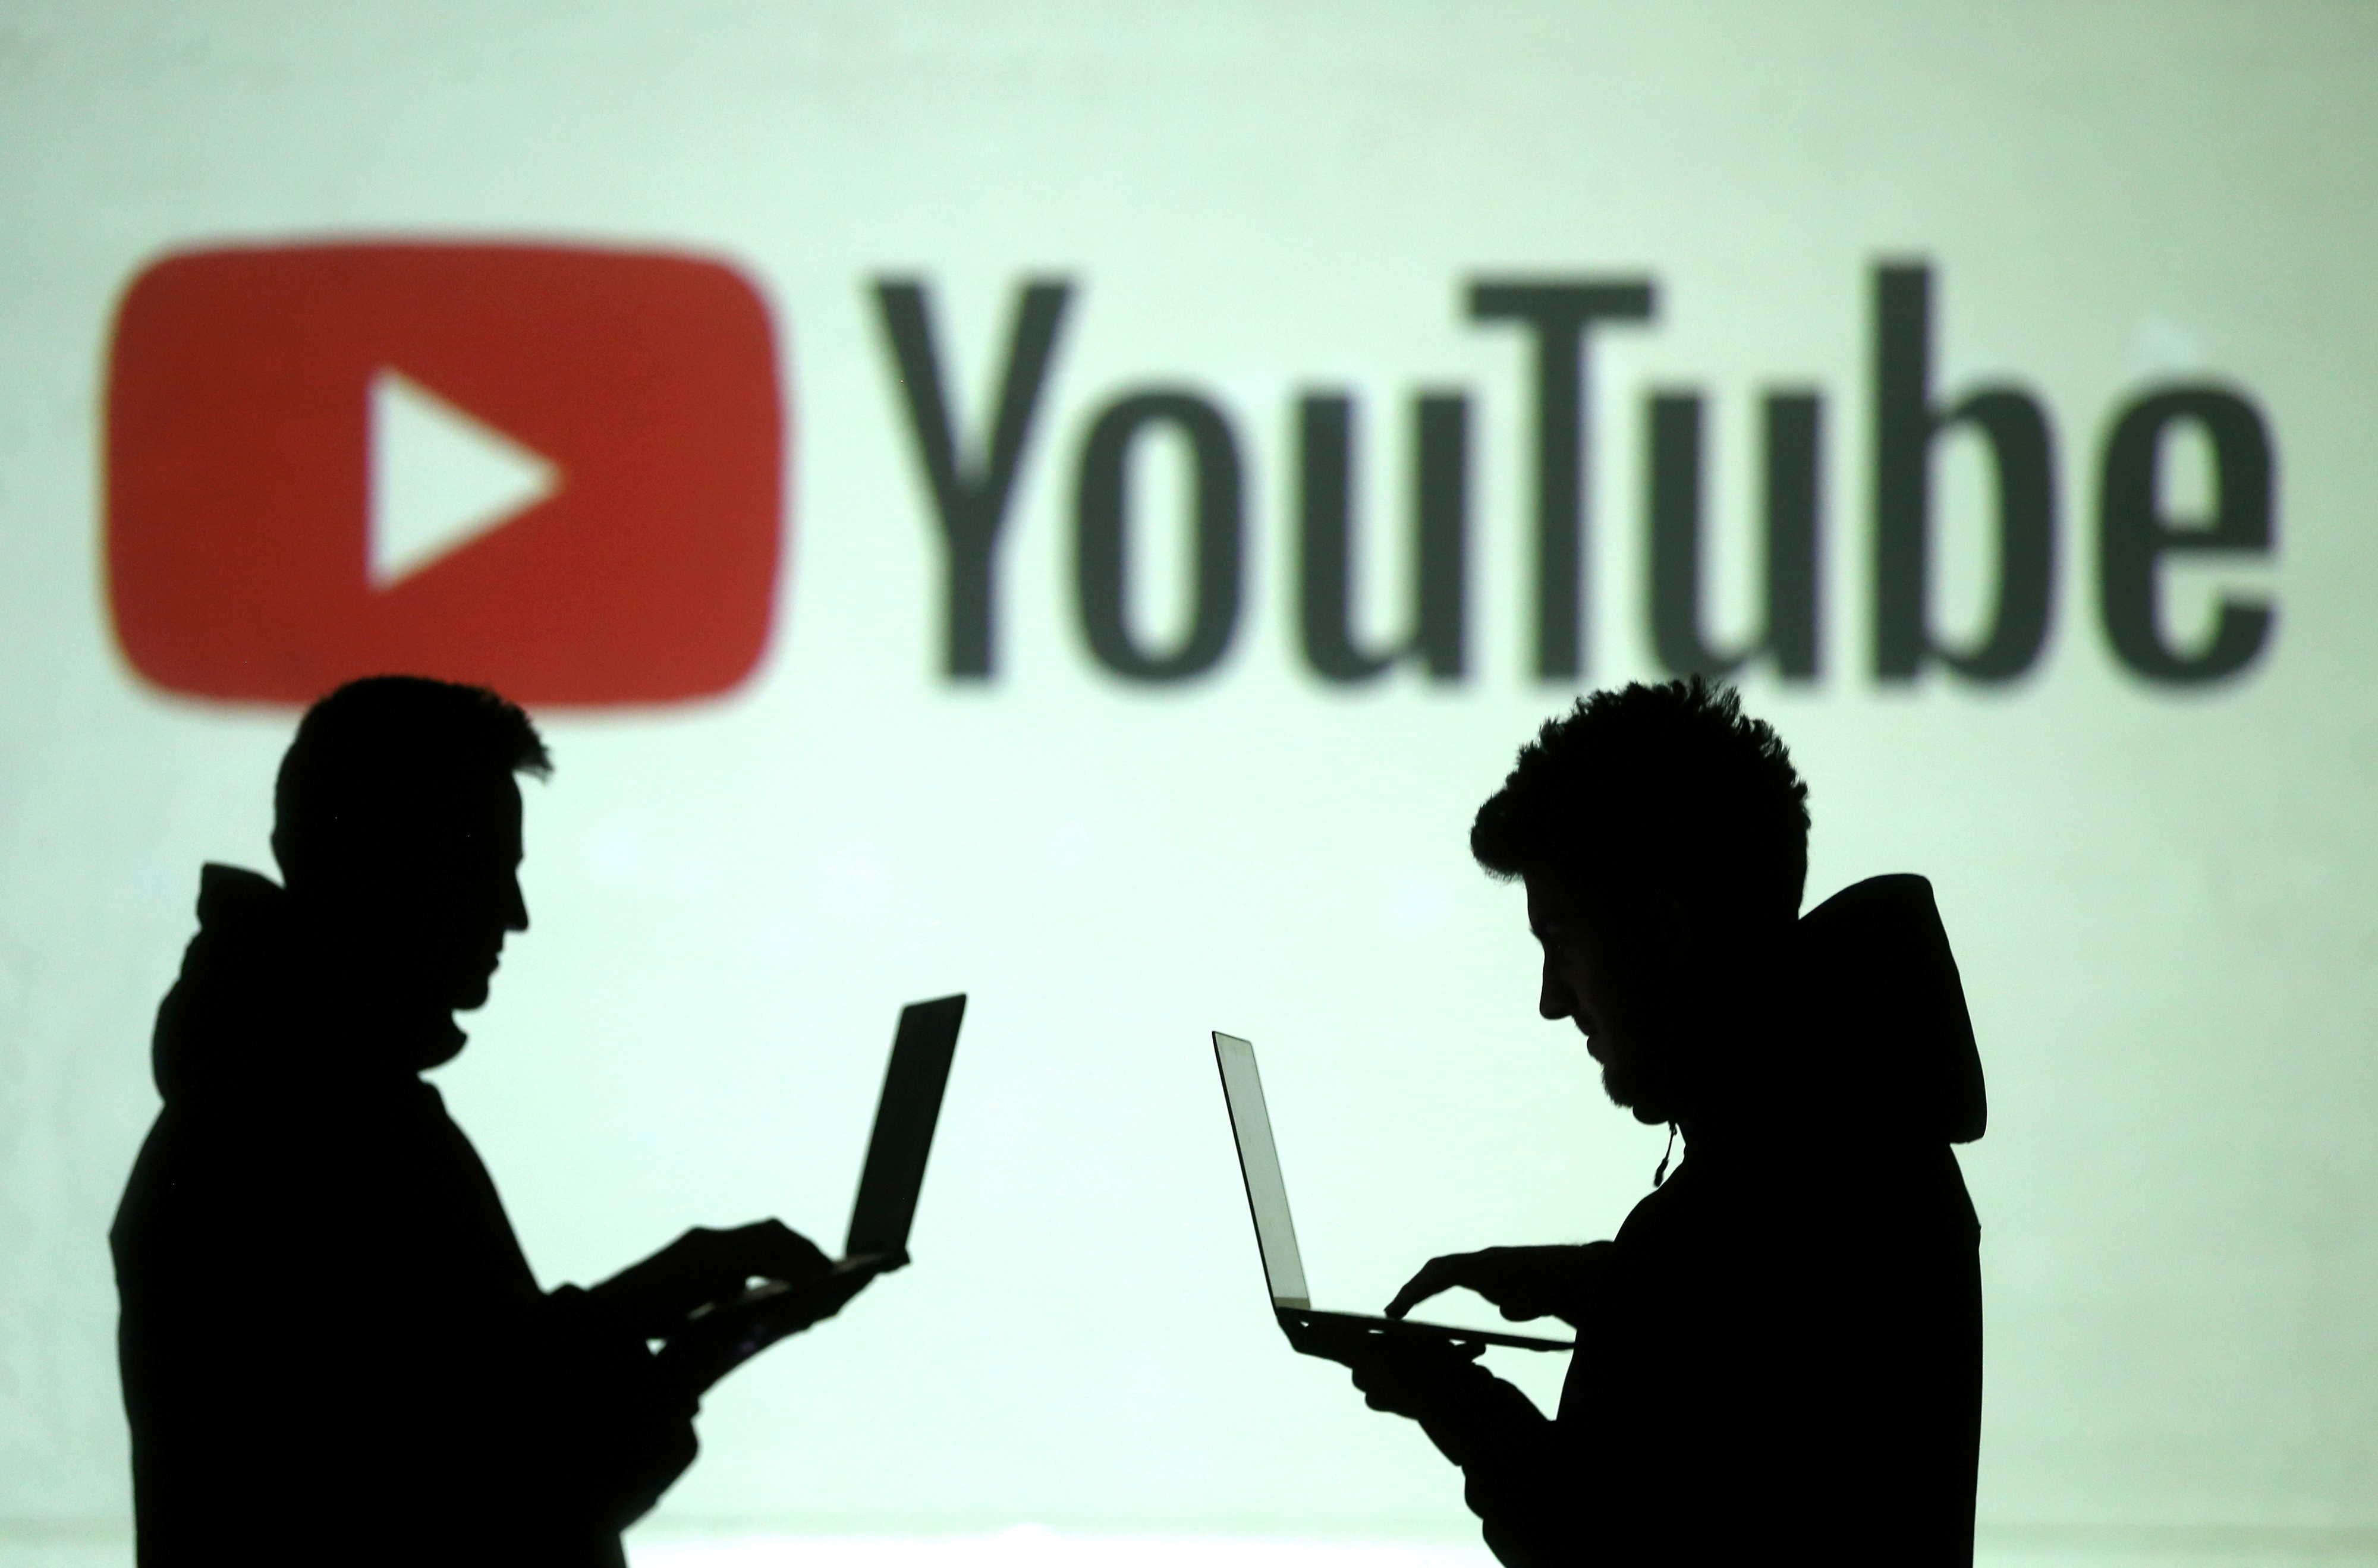 YouTube se une a las plataformas que reportan fallas en todo el mundo